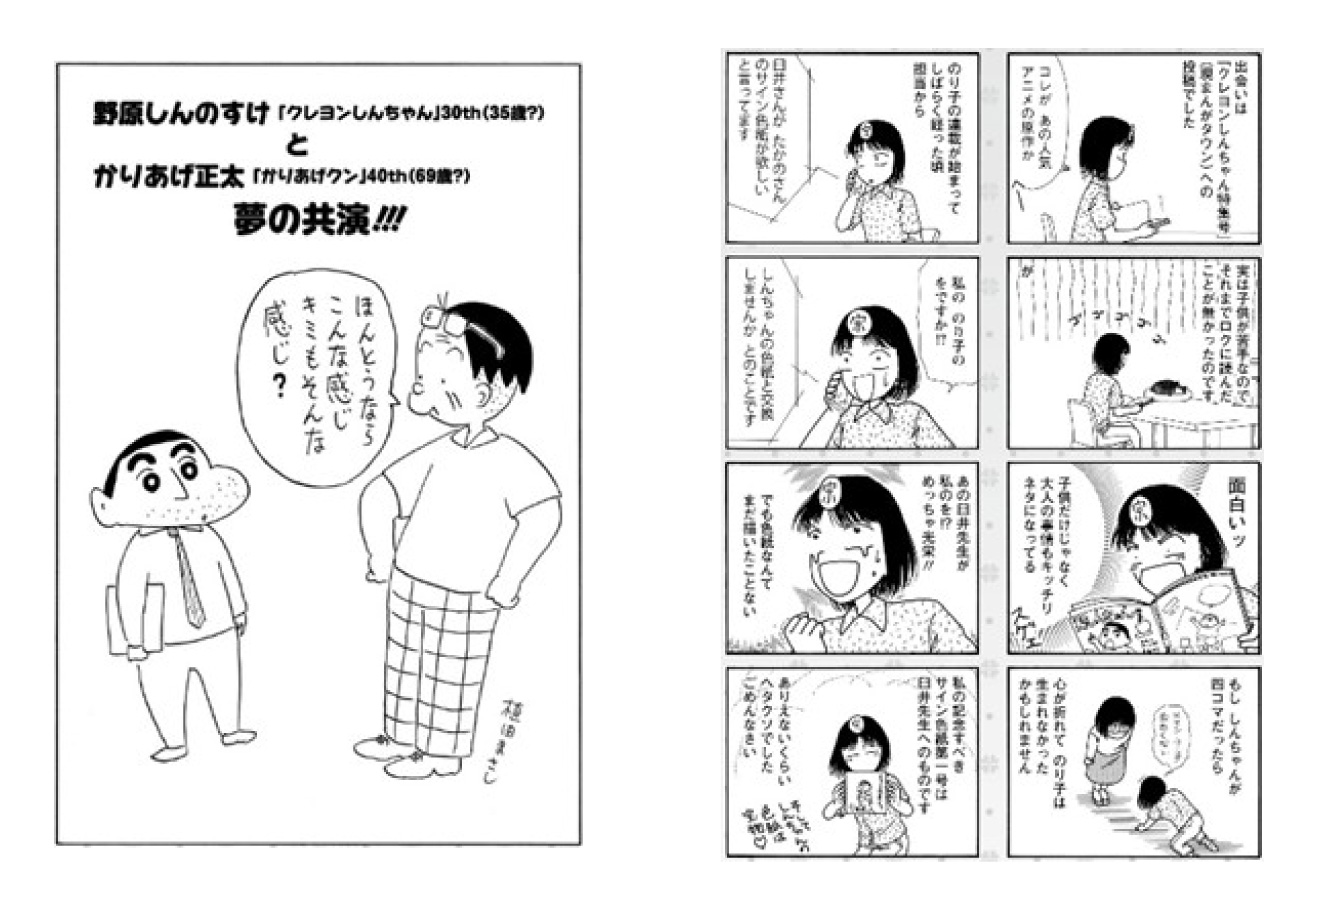 クレヨンしんちゃん原作30周年プロジェクト 始動 moshi moshi nippon もしもしにっぽん